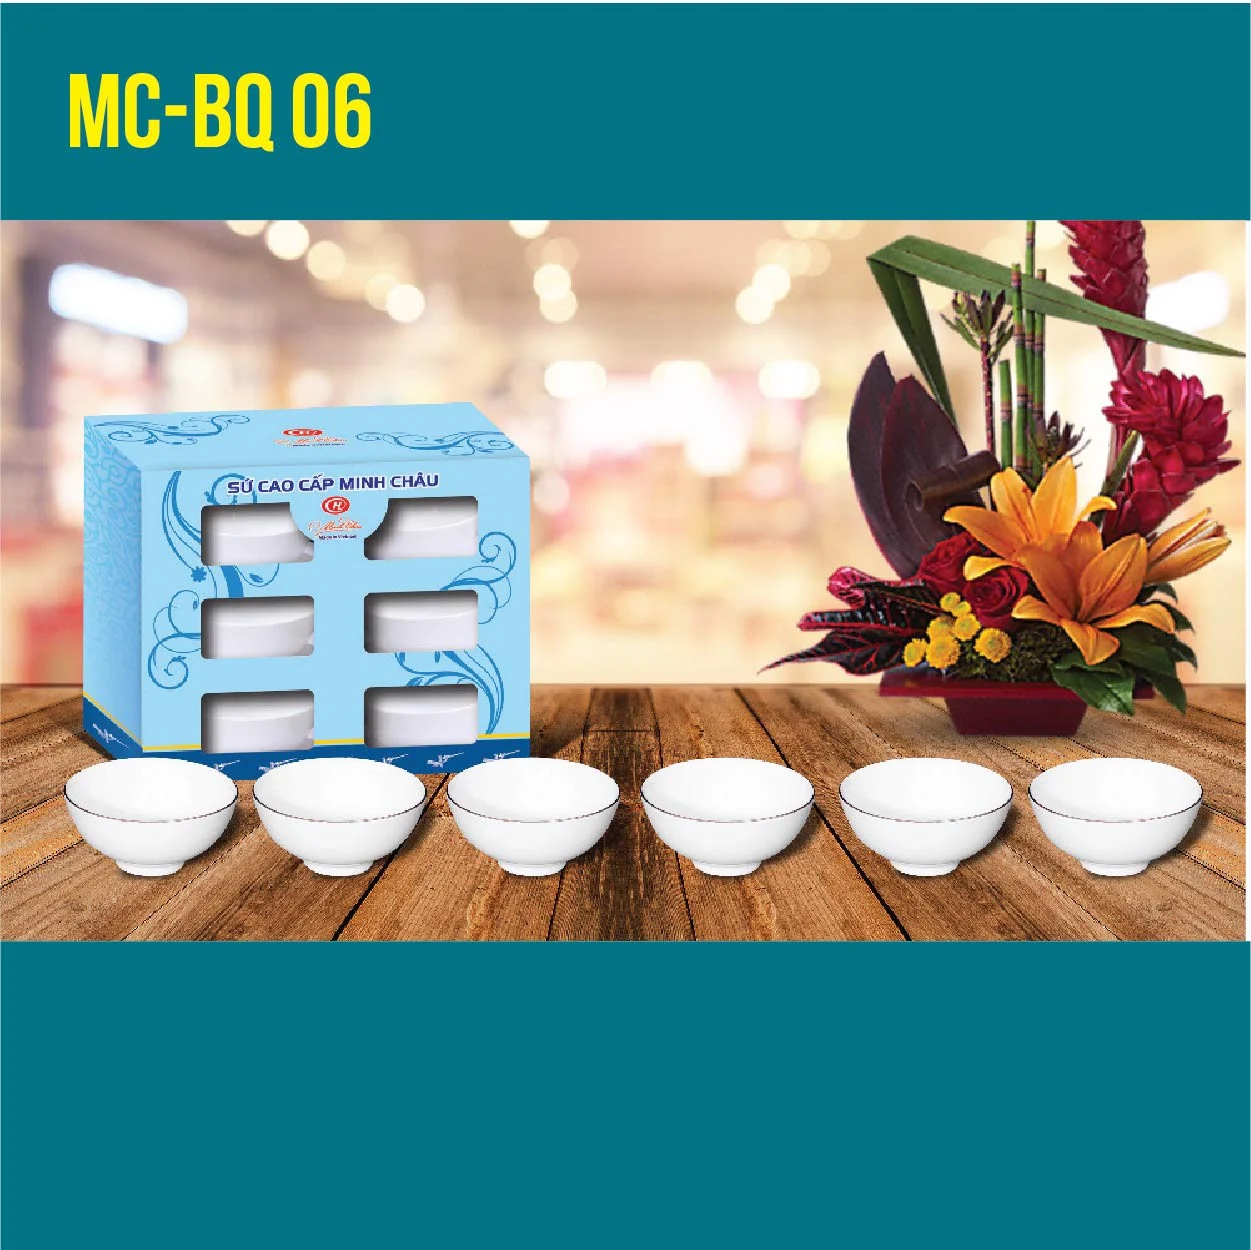 MC-BQ 06-02 Sứ quà tặng cao cấp bộ 6 sản phẩm sứ Minh Châu